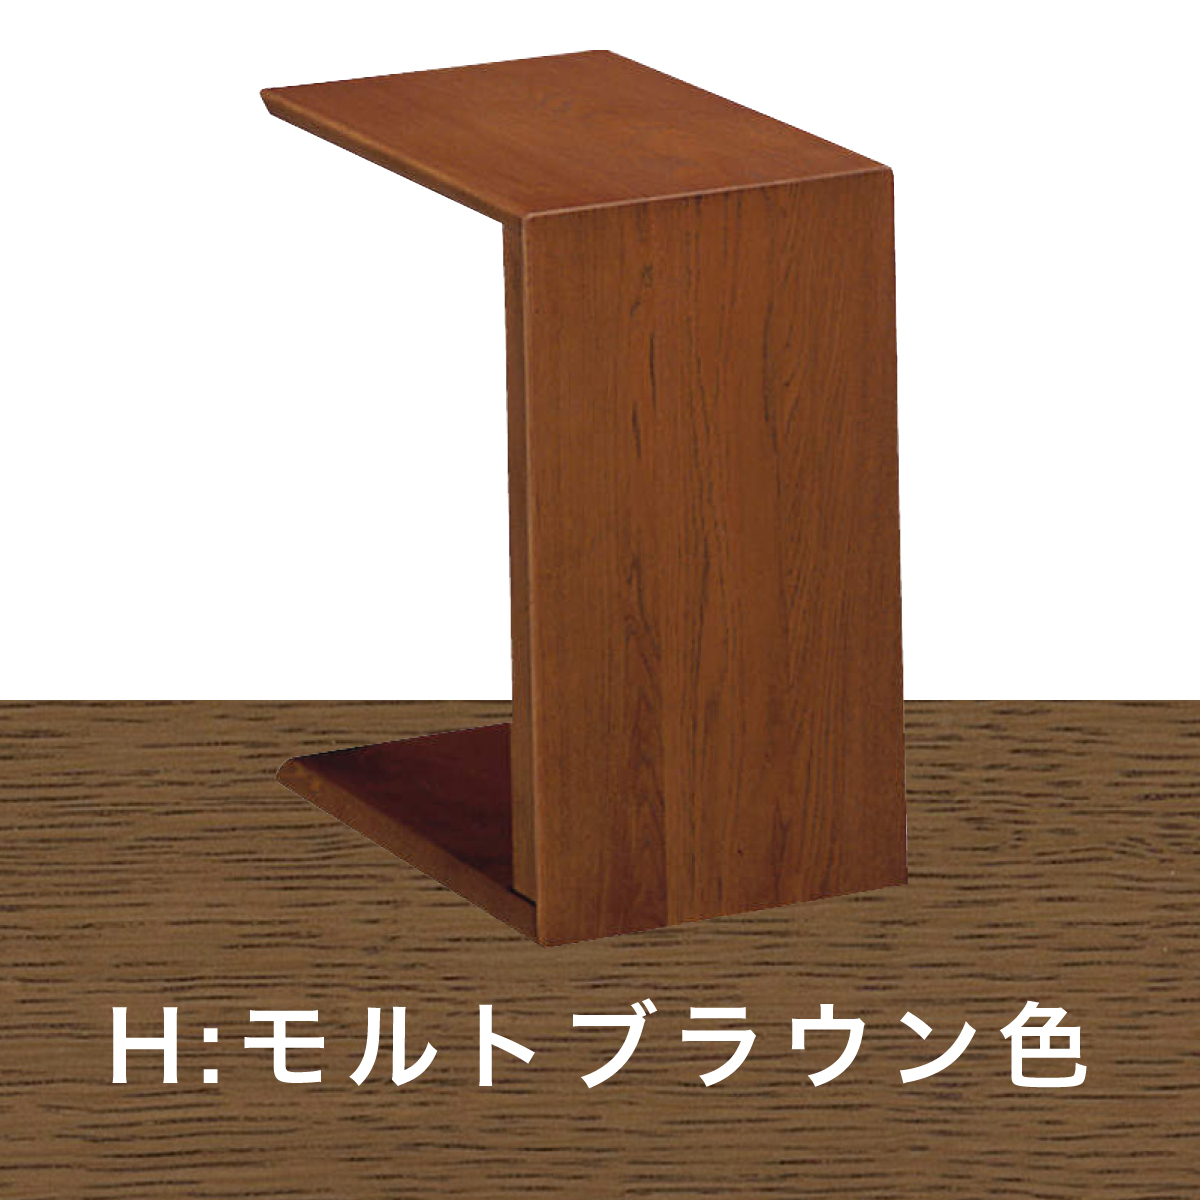 サイドテーブルカリモク コの字型 テーブル TU1752 オーク 材 木製 机 コンパクト PCテー...